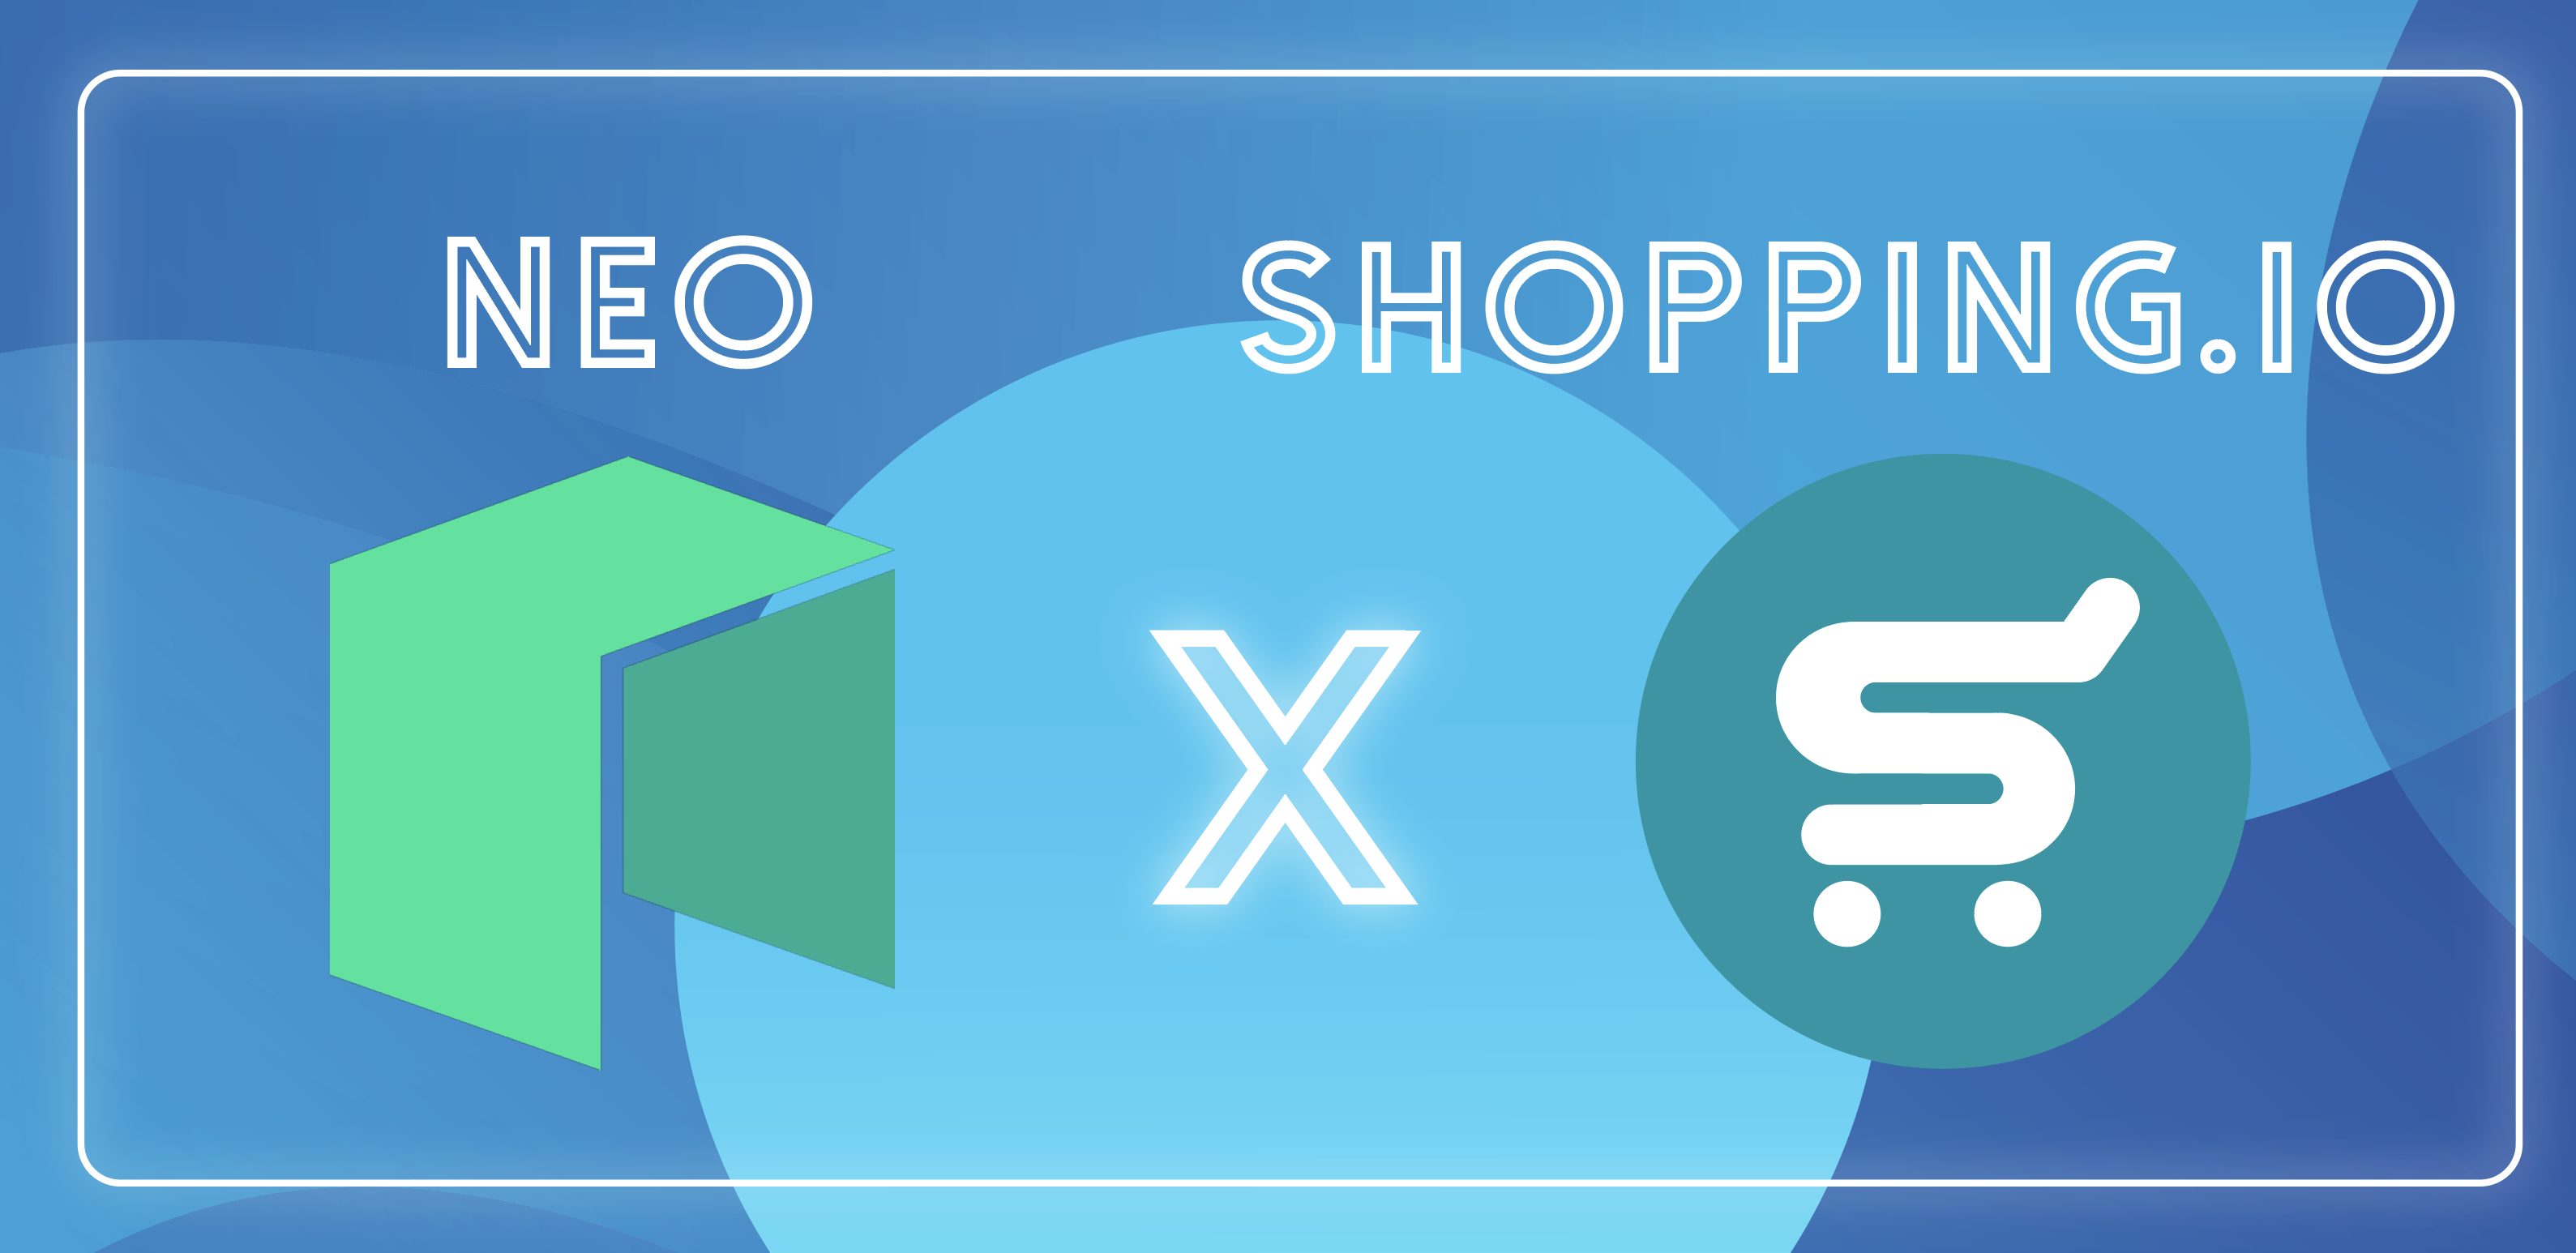 Shopping.io sealed a partnership with Neo Smart Economy ...